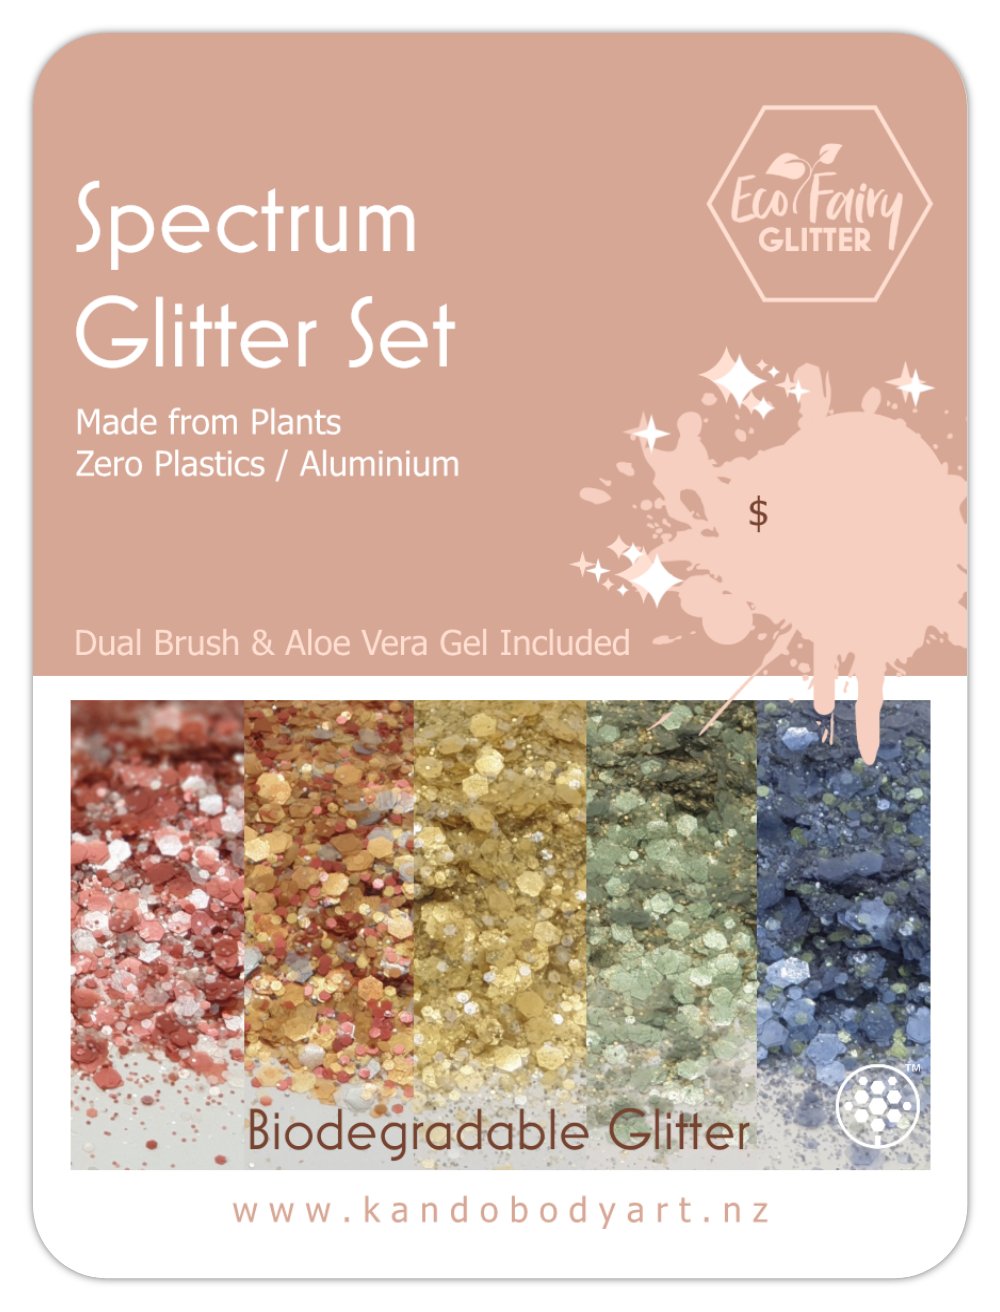 Spectrum Glitter Bar Kit